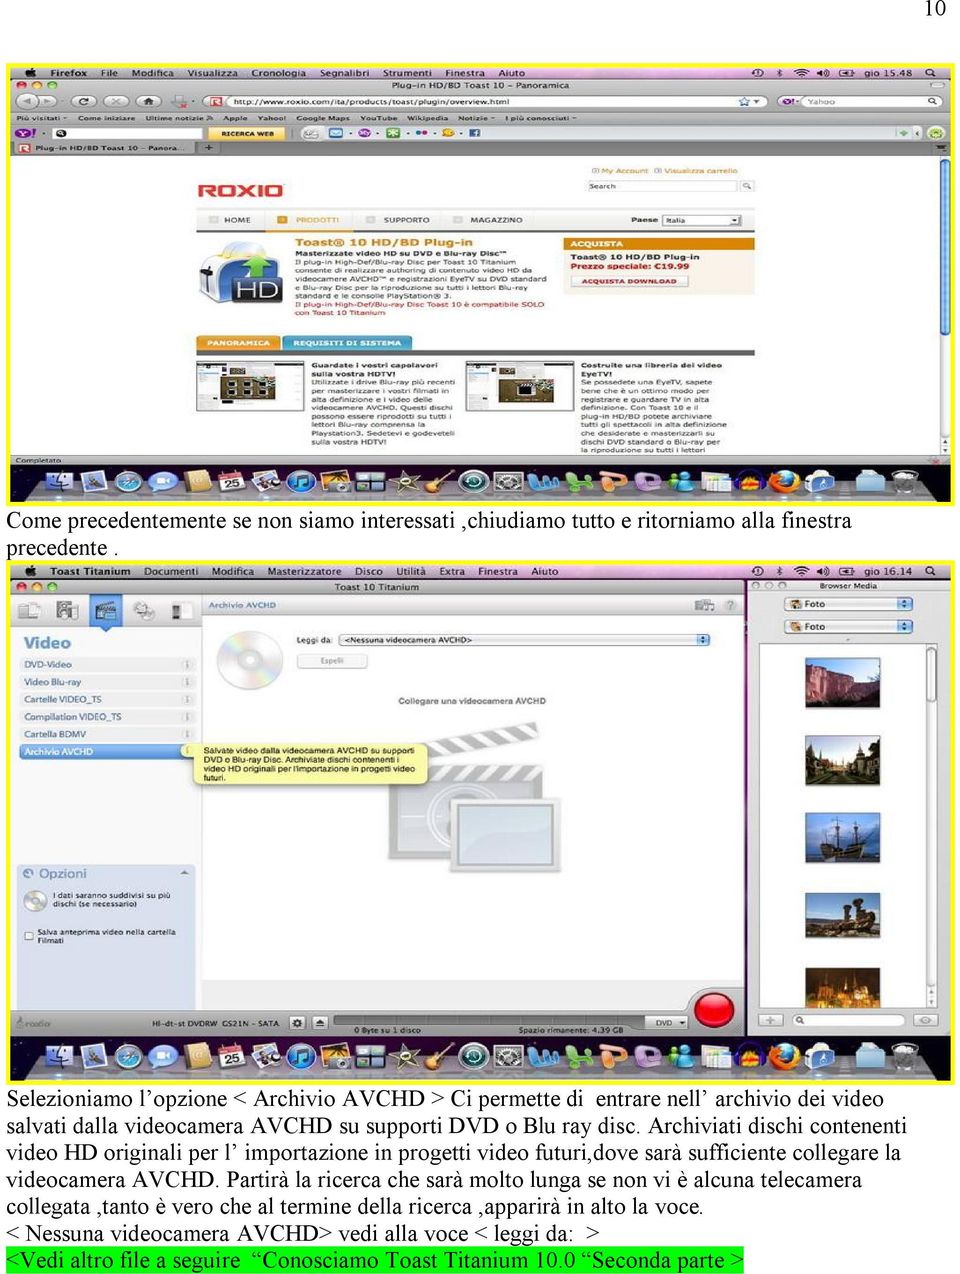 Archiviati dischi contenenti video HD originali per l importazione in progetti video futuri,dove sarà sufficiente collegare la videocamera AVCHD.